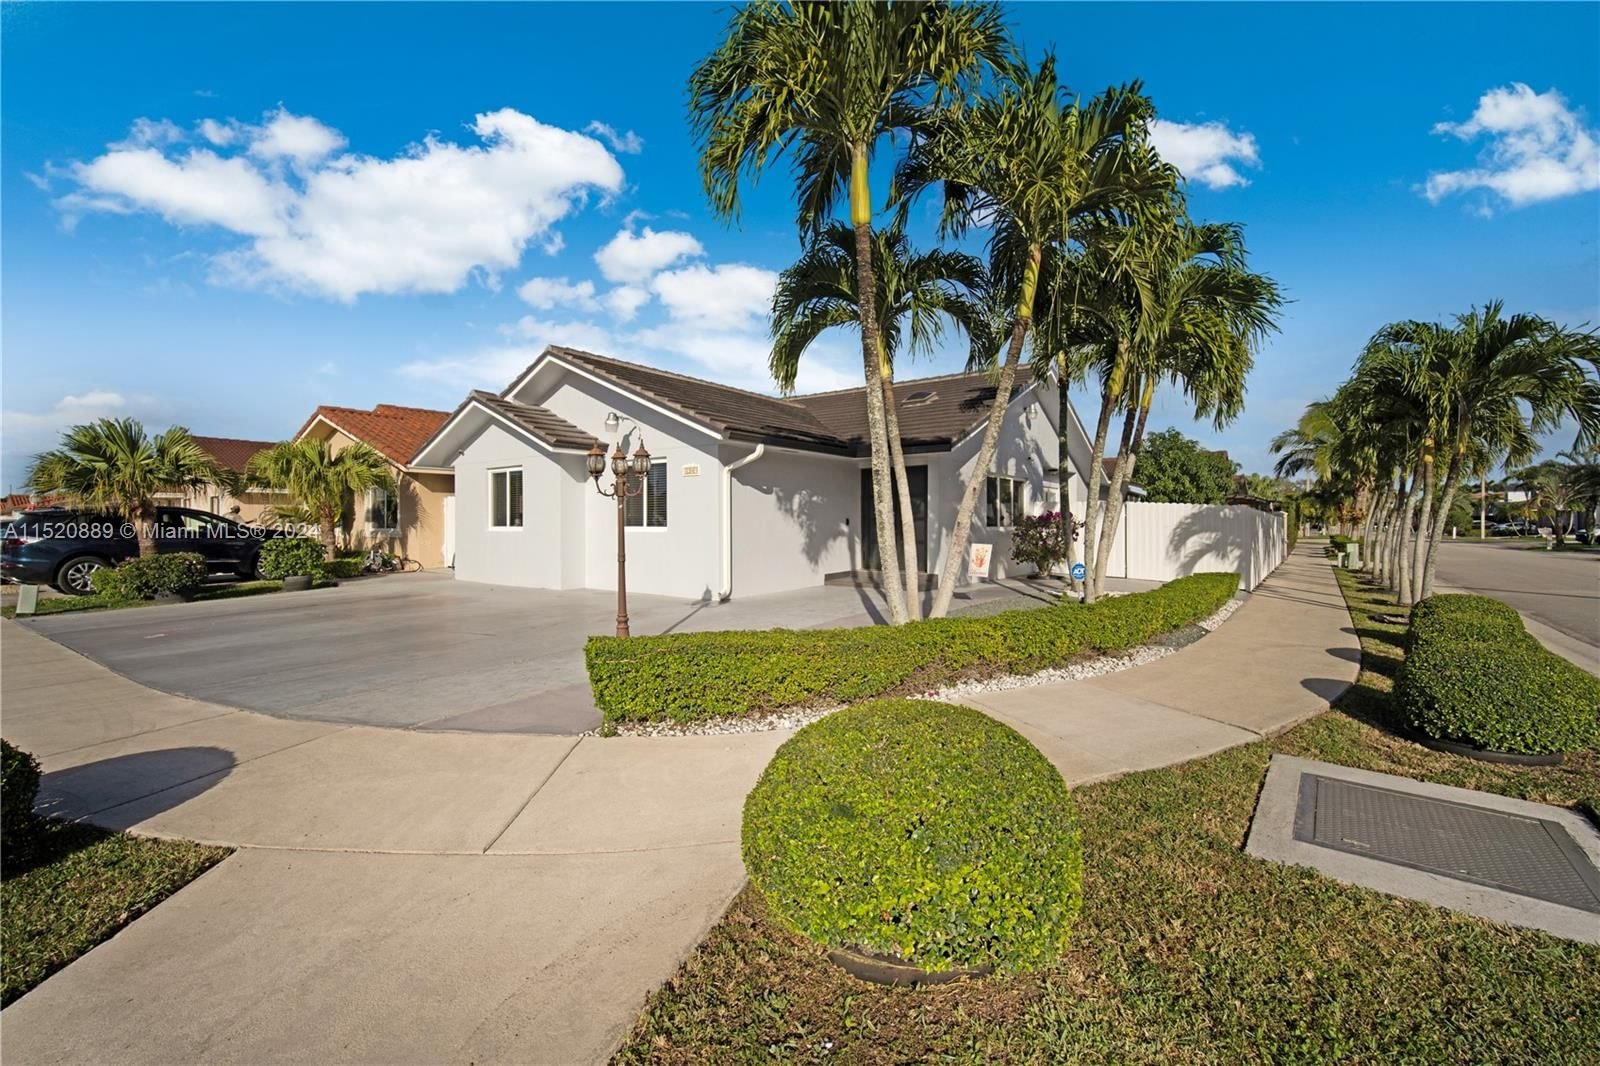 Real estate property located at 1285 141st Ave, Miami-Dade County, ALJURA SUB, Miami, FL